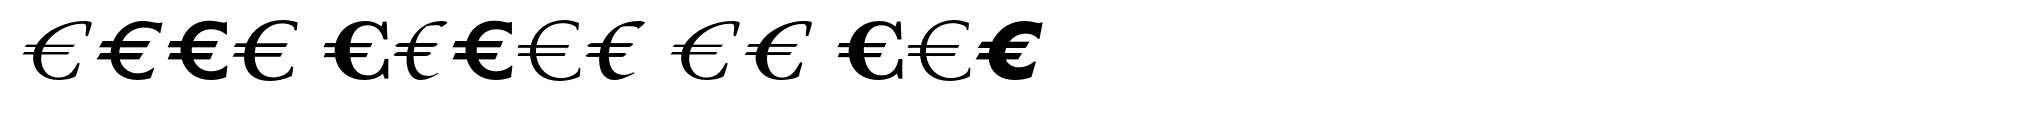 Euro Serif EF Six image